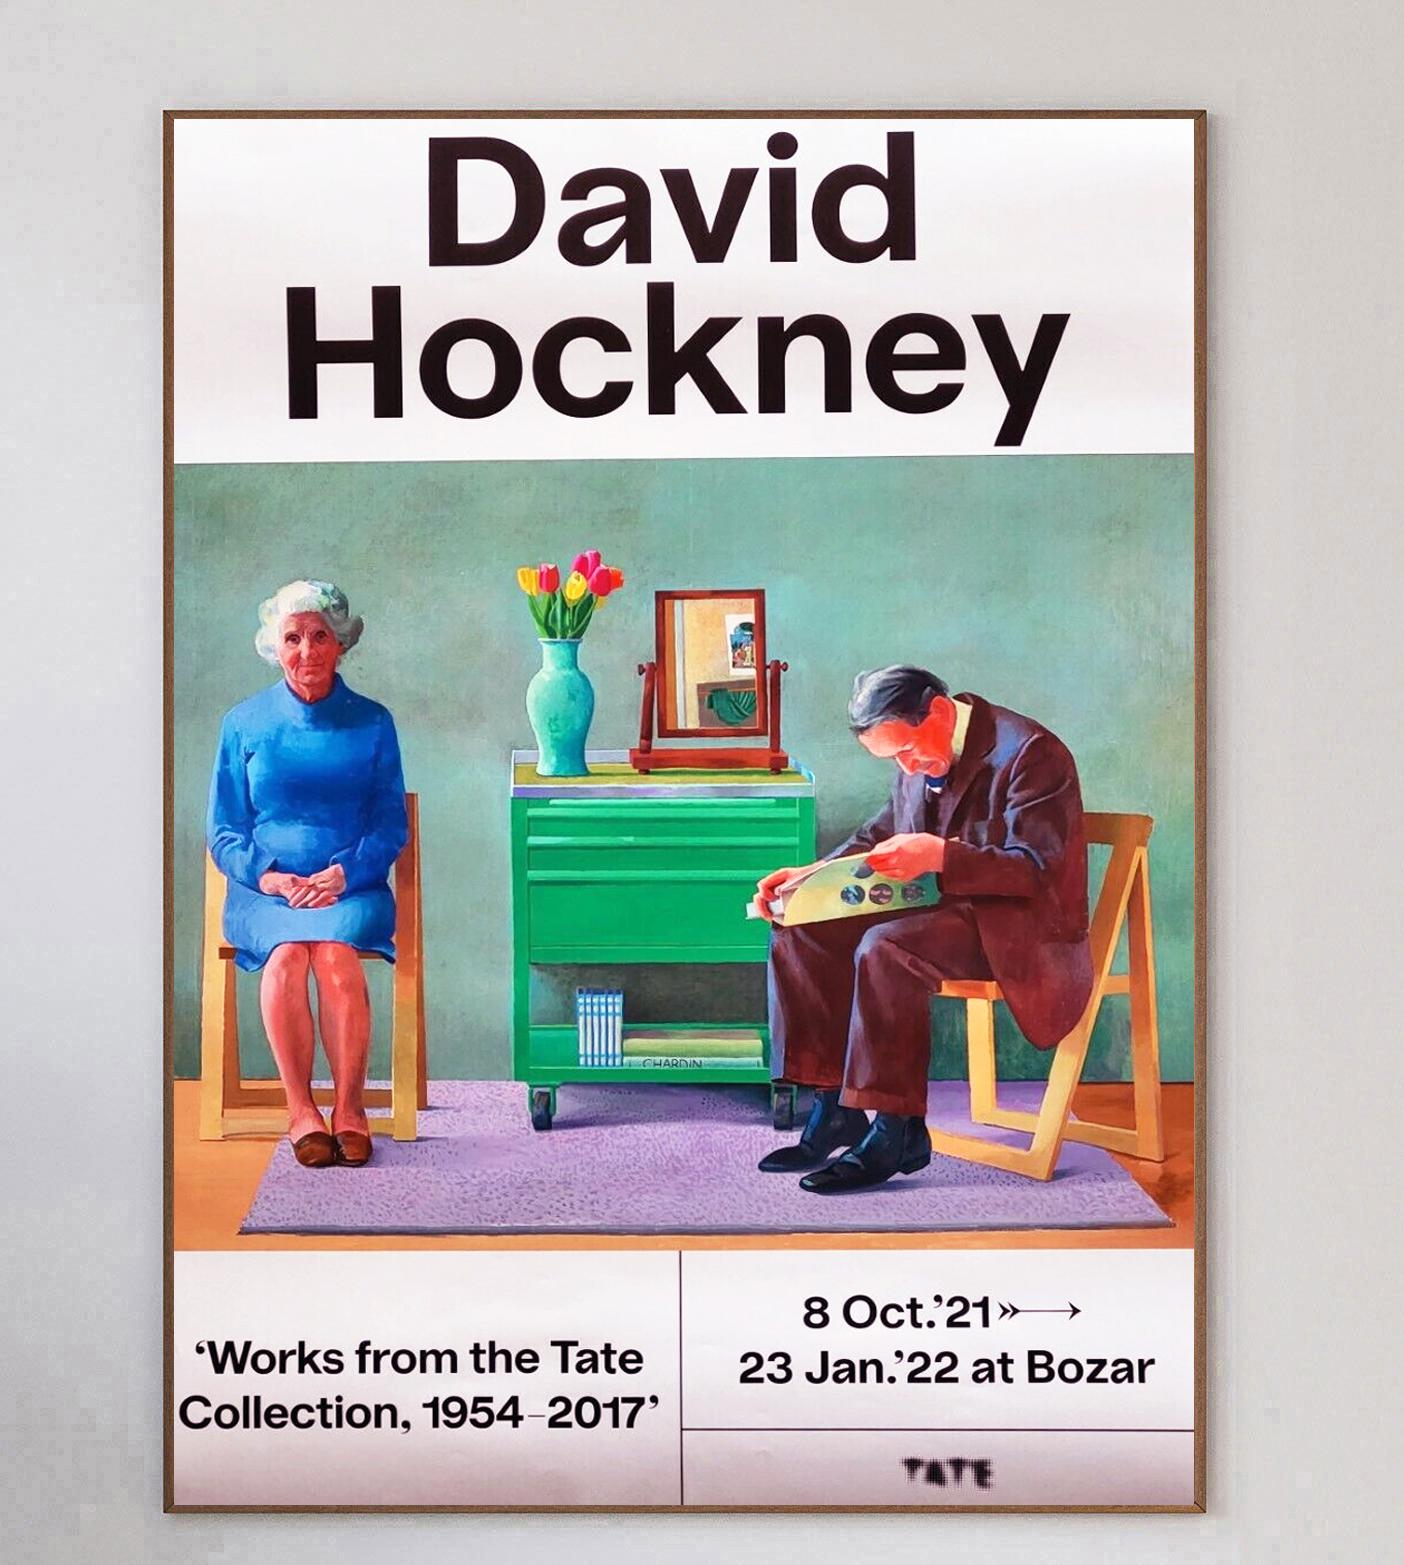 Cette magnifique affiche fait la promotion de l'exposition David Hockney 